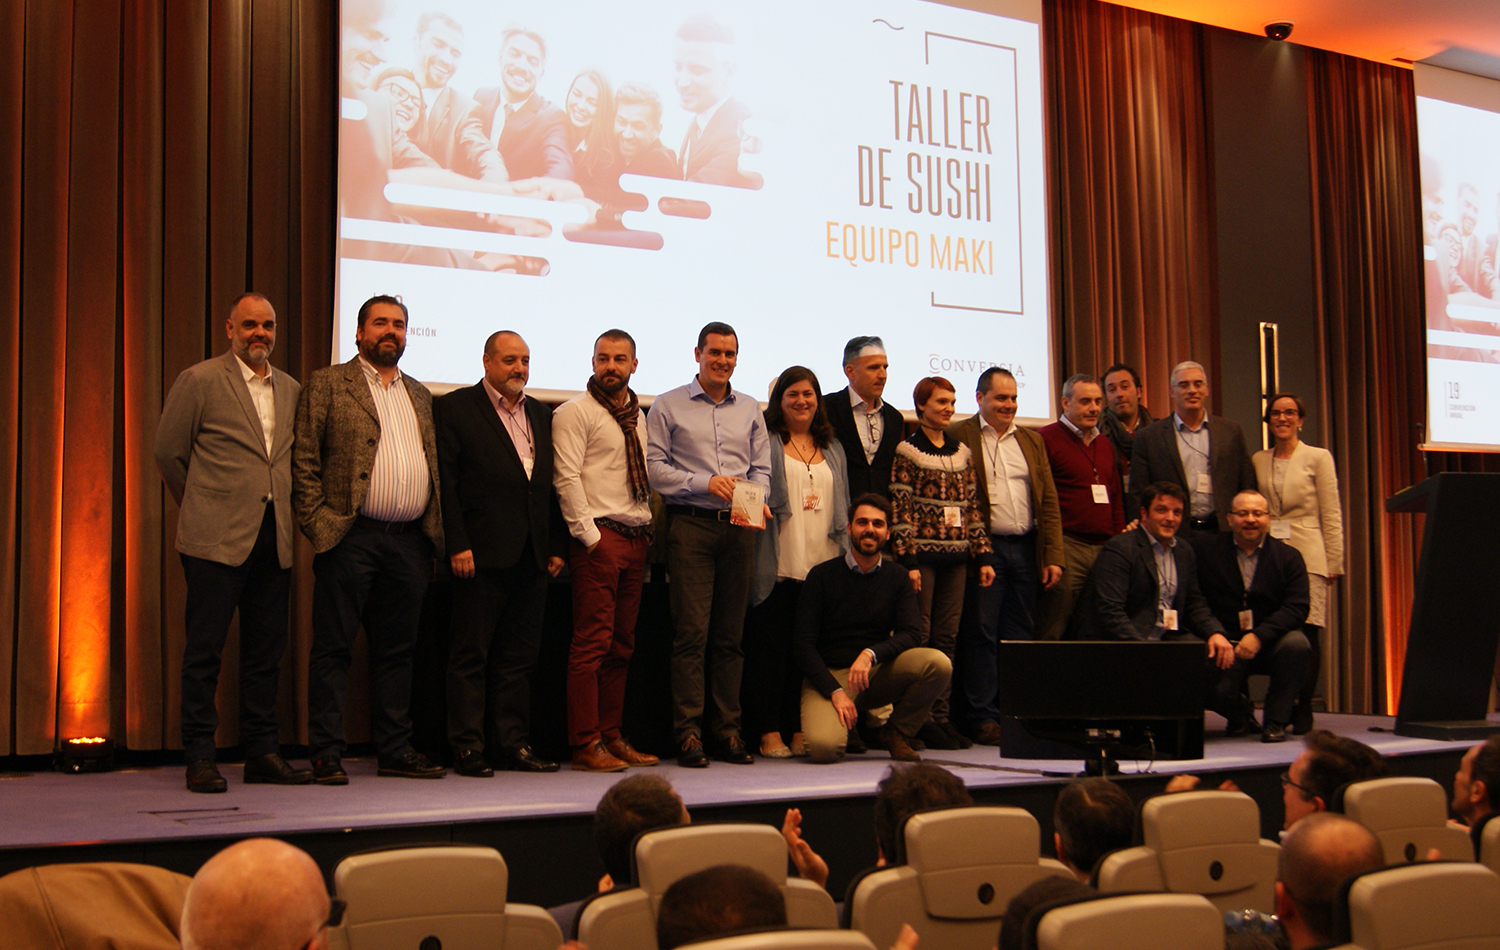 Los componentes del equipo Maki, ganador del taller, junto a la Directora de Marketing de Conversia, Angèlica Guillén.